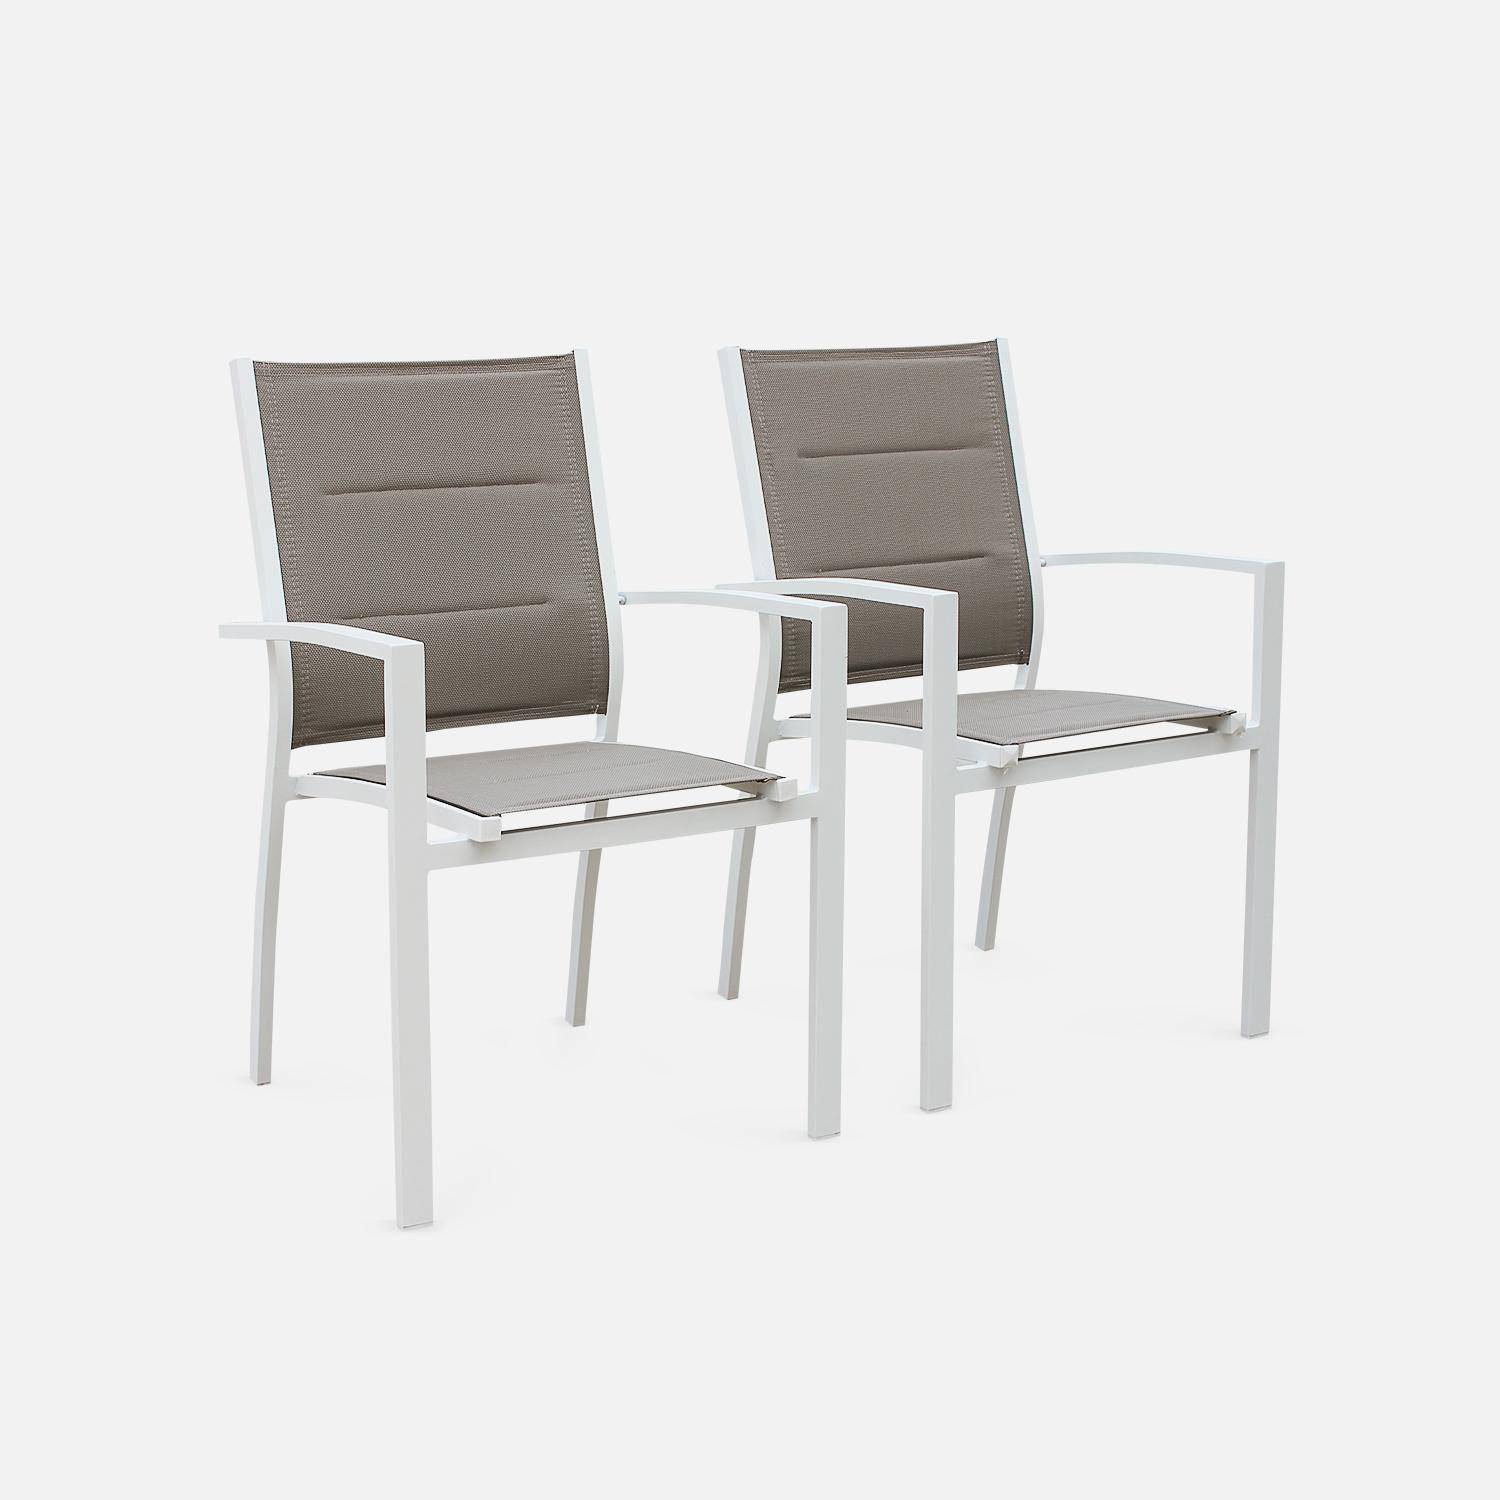 Set da giardino con tavolo allungabile - modello: Chicago 210, colore: Talpa - Tavolo in alluminio, dimensioni: 150/210cm con prolunga e 6 sedute in textilene Photo7